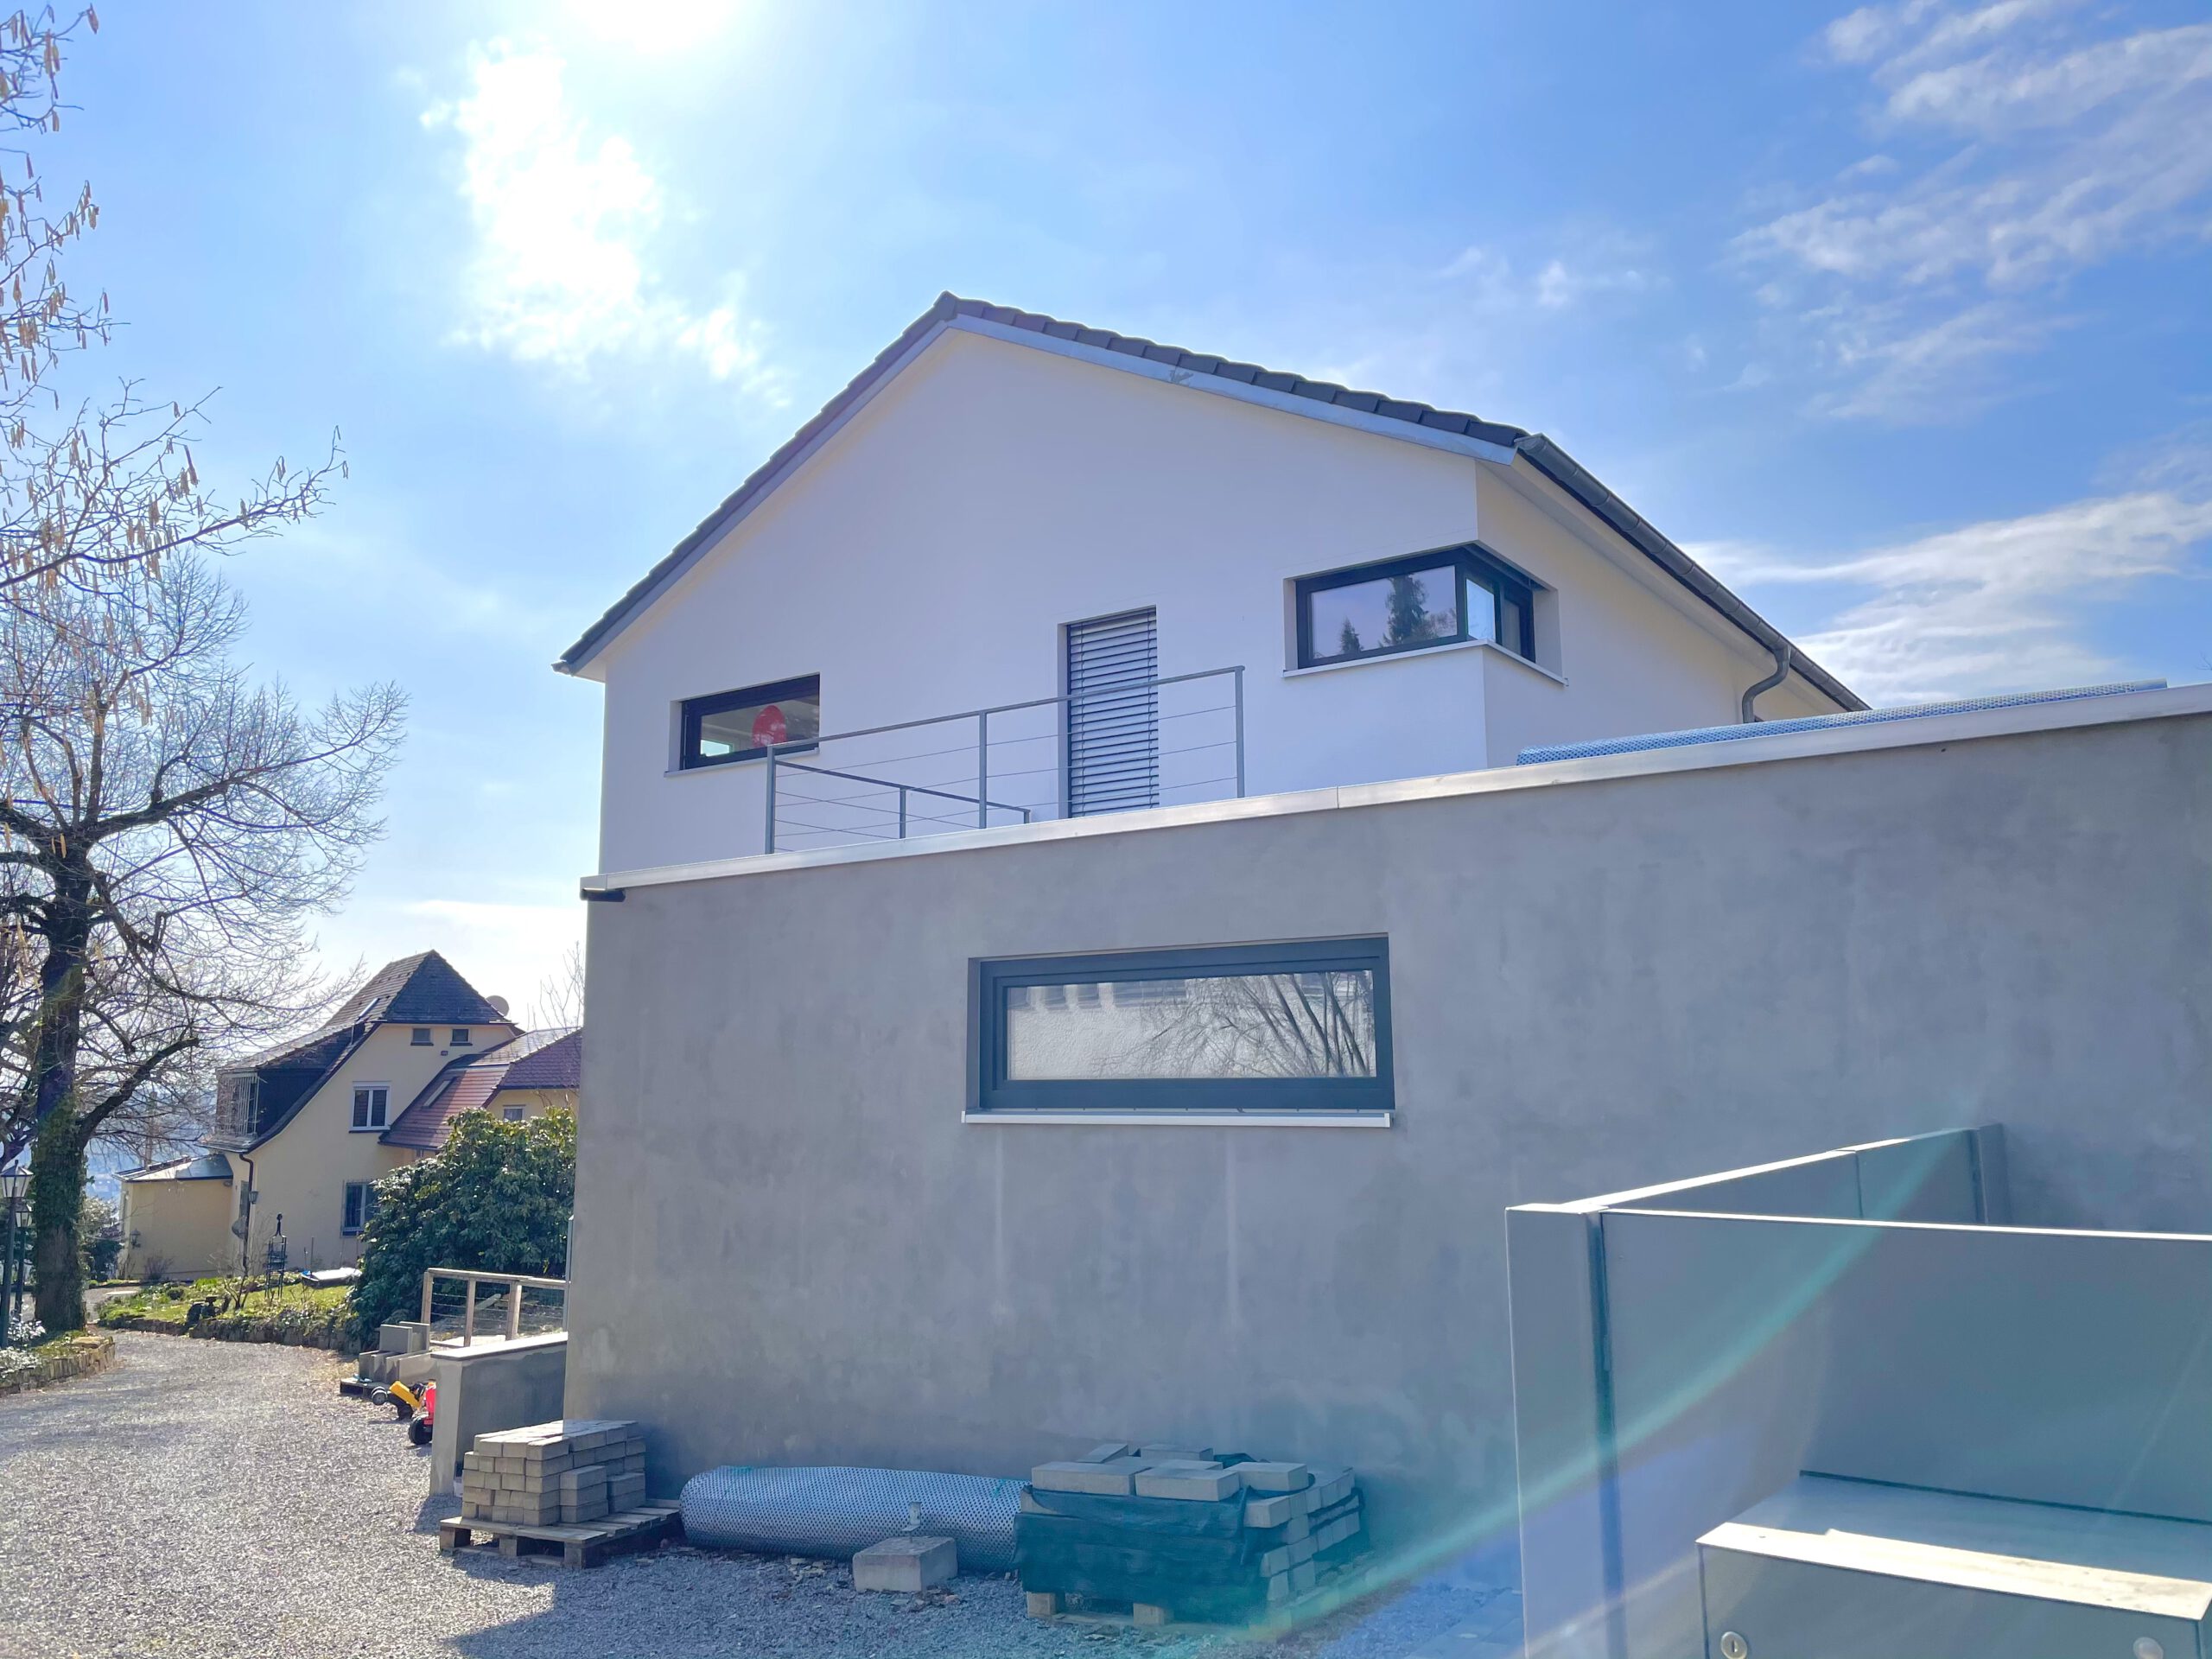 Zogjani Bauunternehmen - Referenz: Einfamilienhaus in Stuttgart-Vaihingen